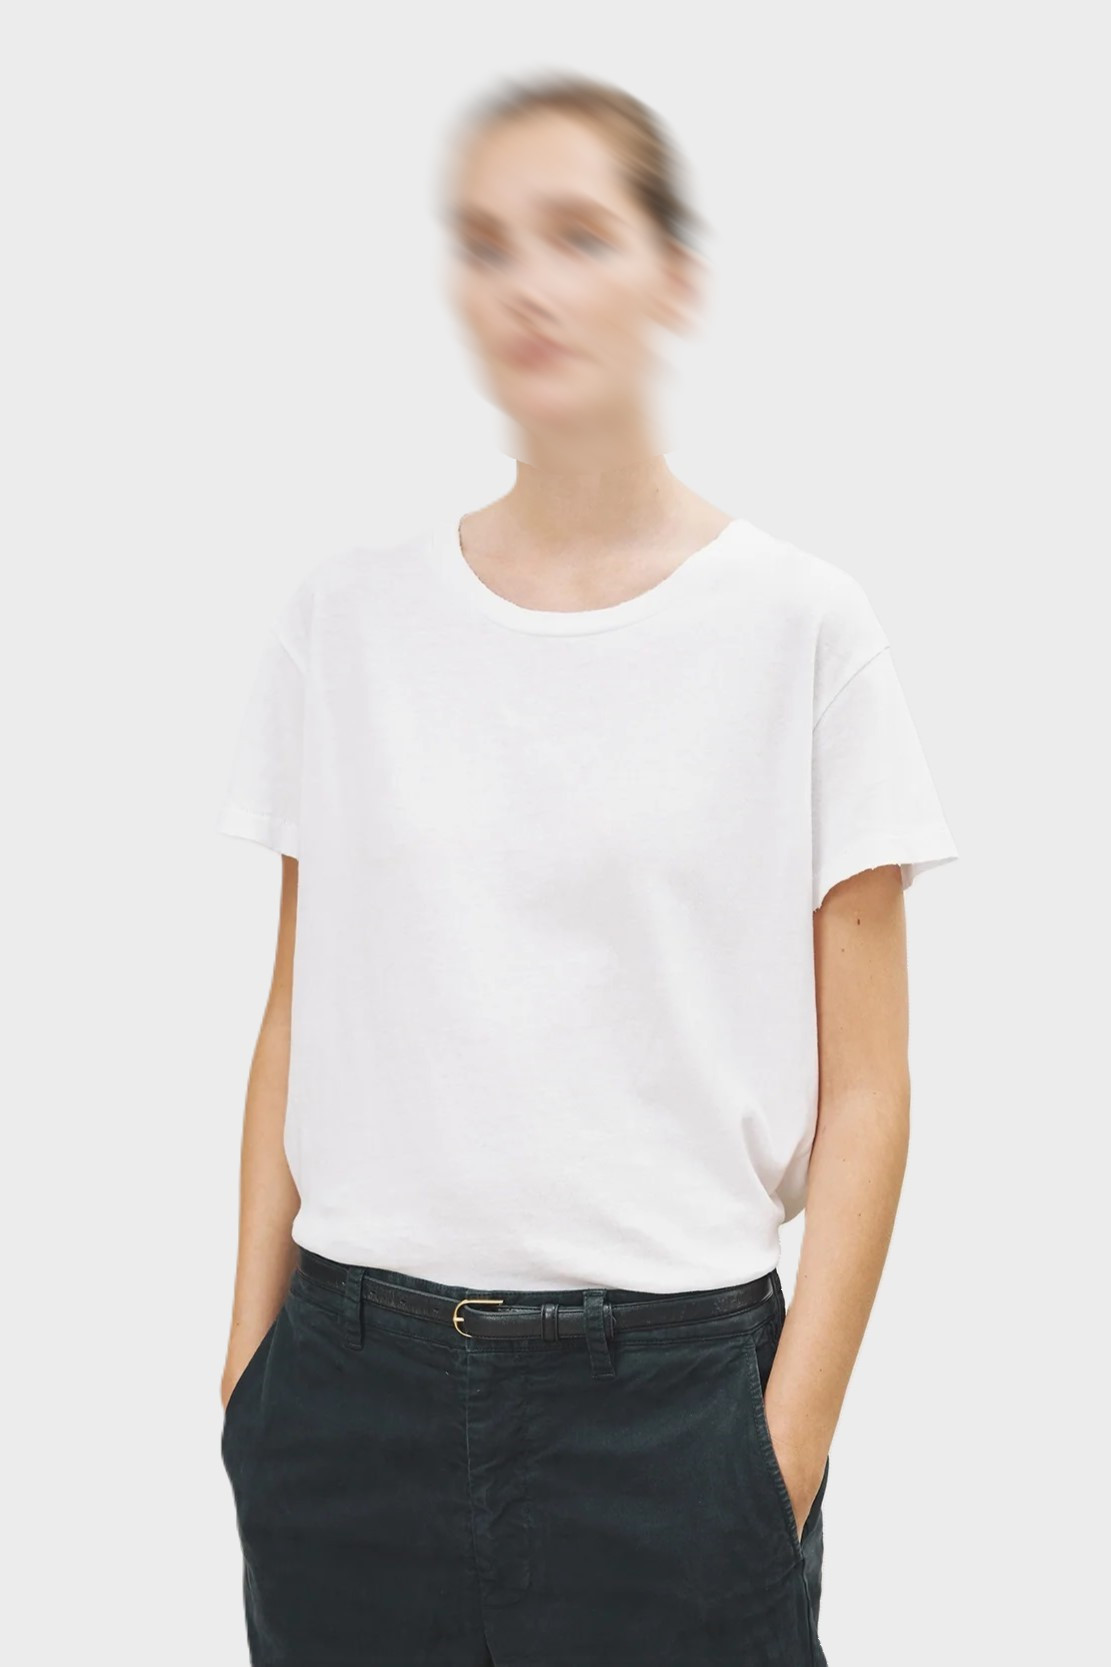 Nili Lotan Brady T-Shirt White